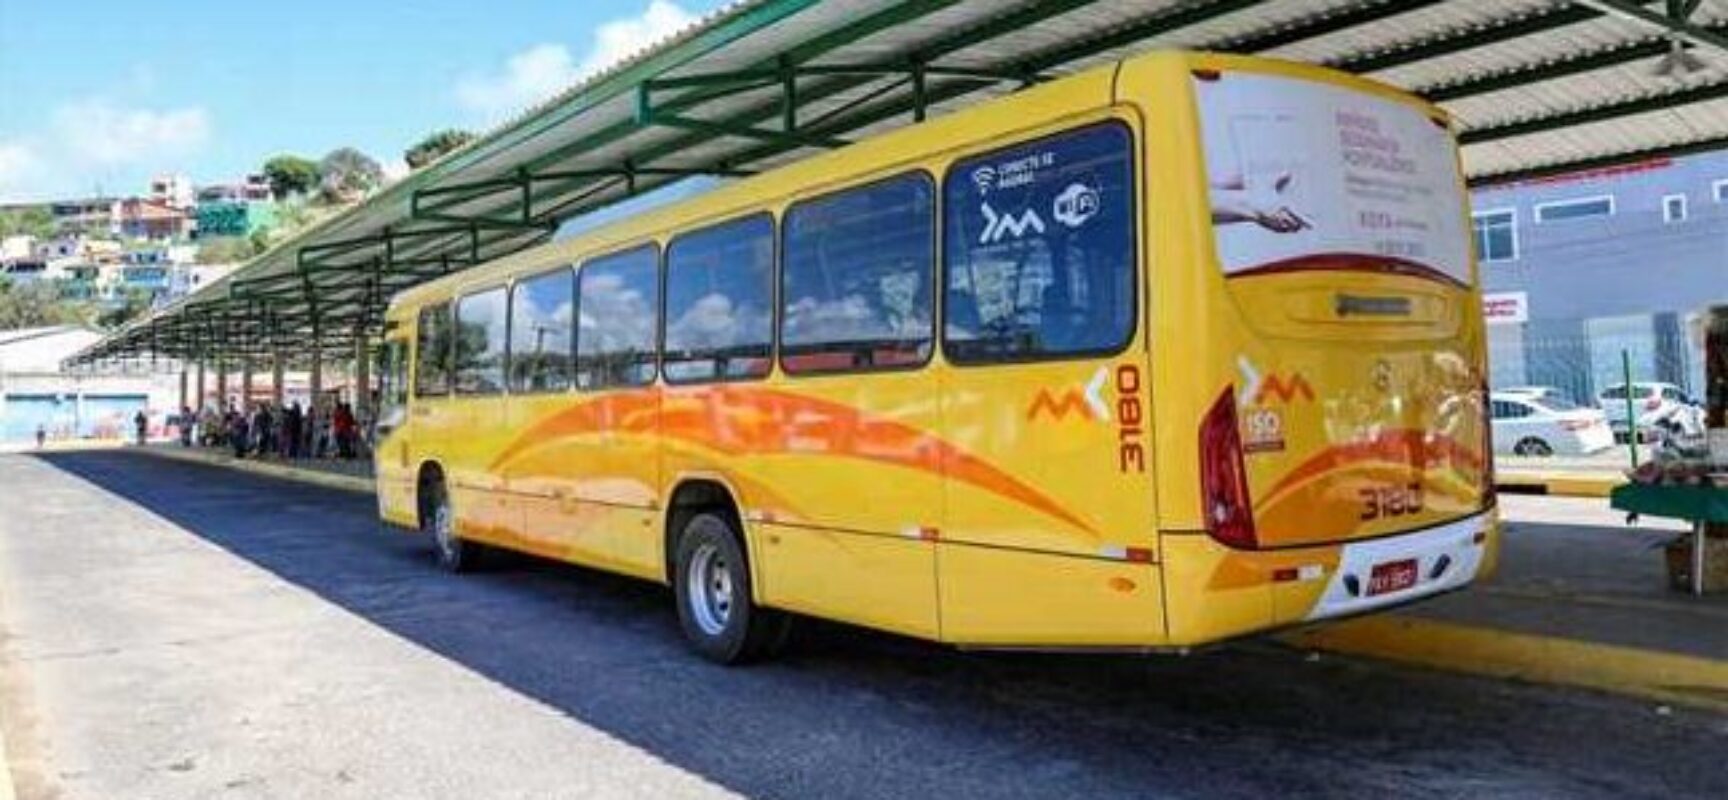 Prefeitura de Ilhéus atende demanda da população e amplia horários de ônibus na zona rural